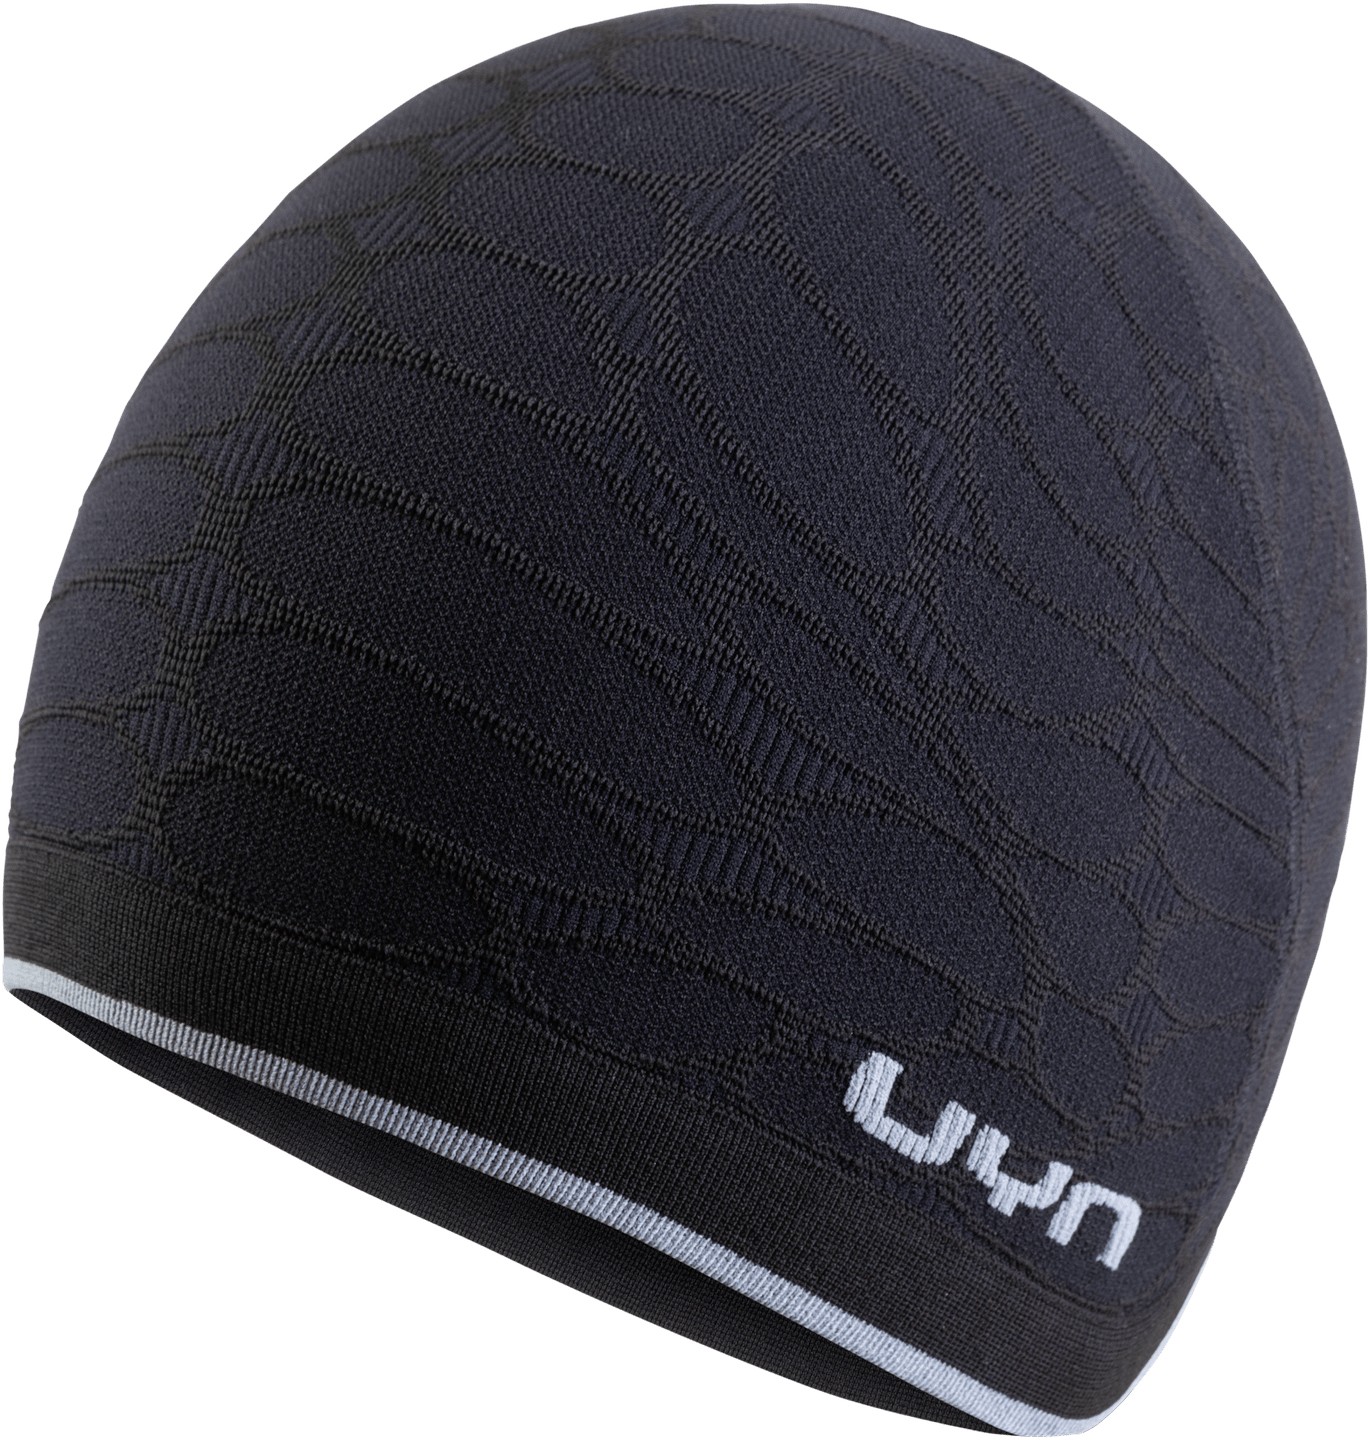 Uyn biking unisex under helmet muts blackboard zwart grijs